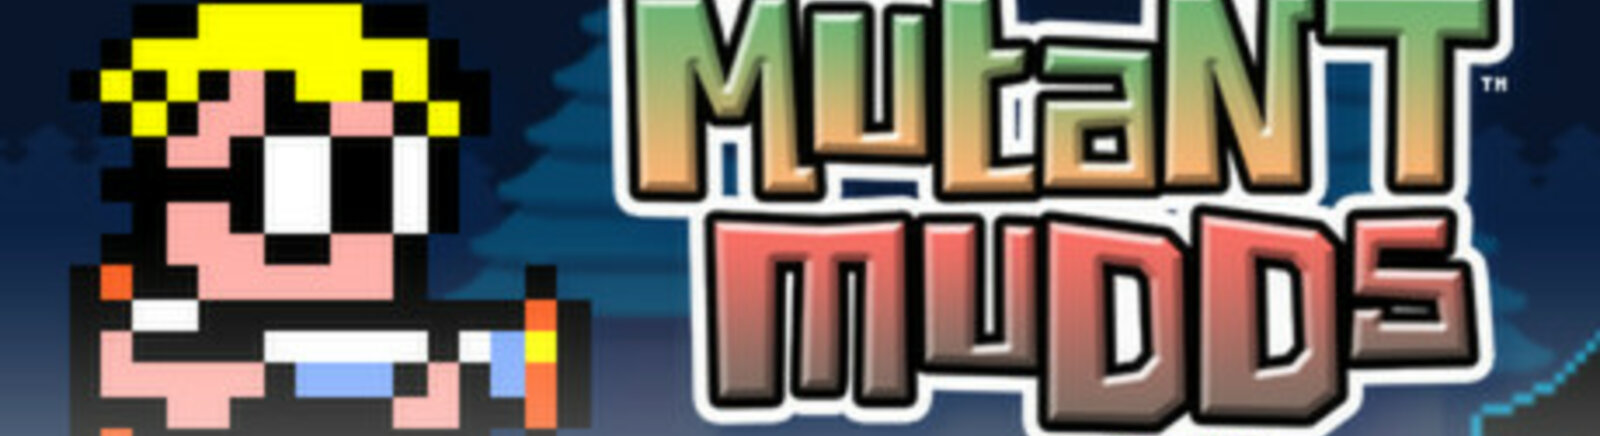 Дата выхода Mutant Mudds Deluxe  на iOS и Wii U в России и во всем мире